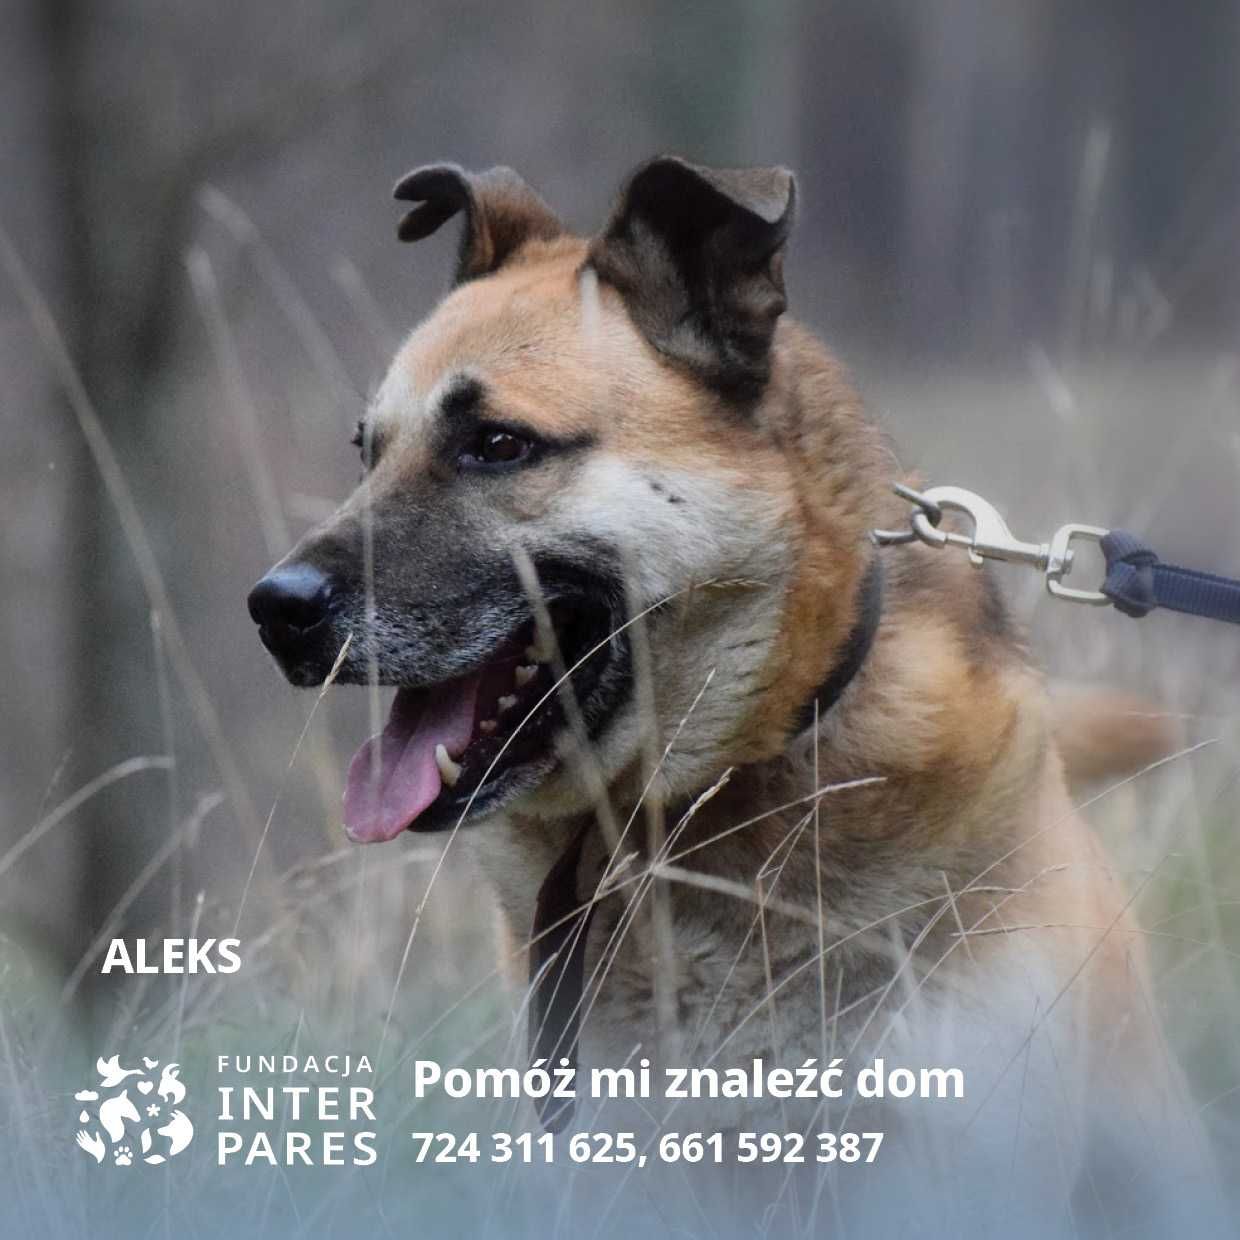 Aleks bardzo fajny przyjazny pies szuka domu!